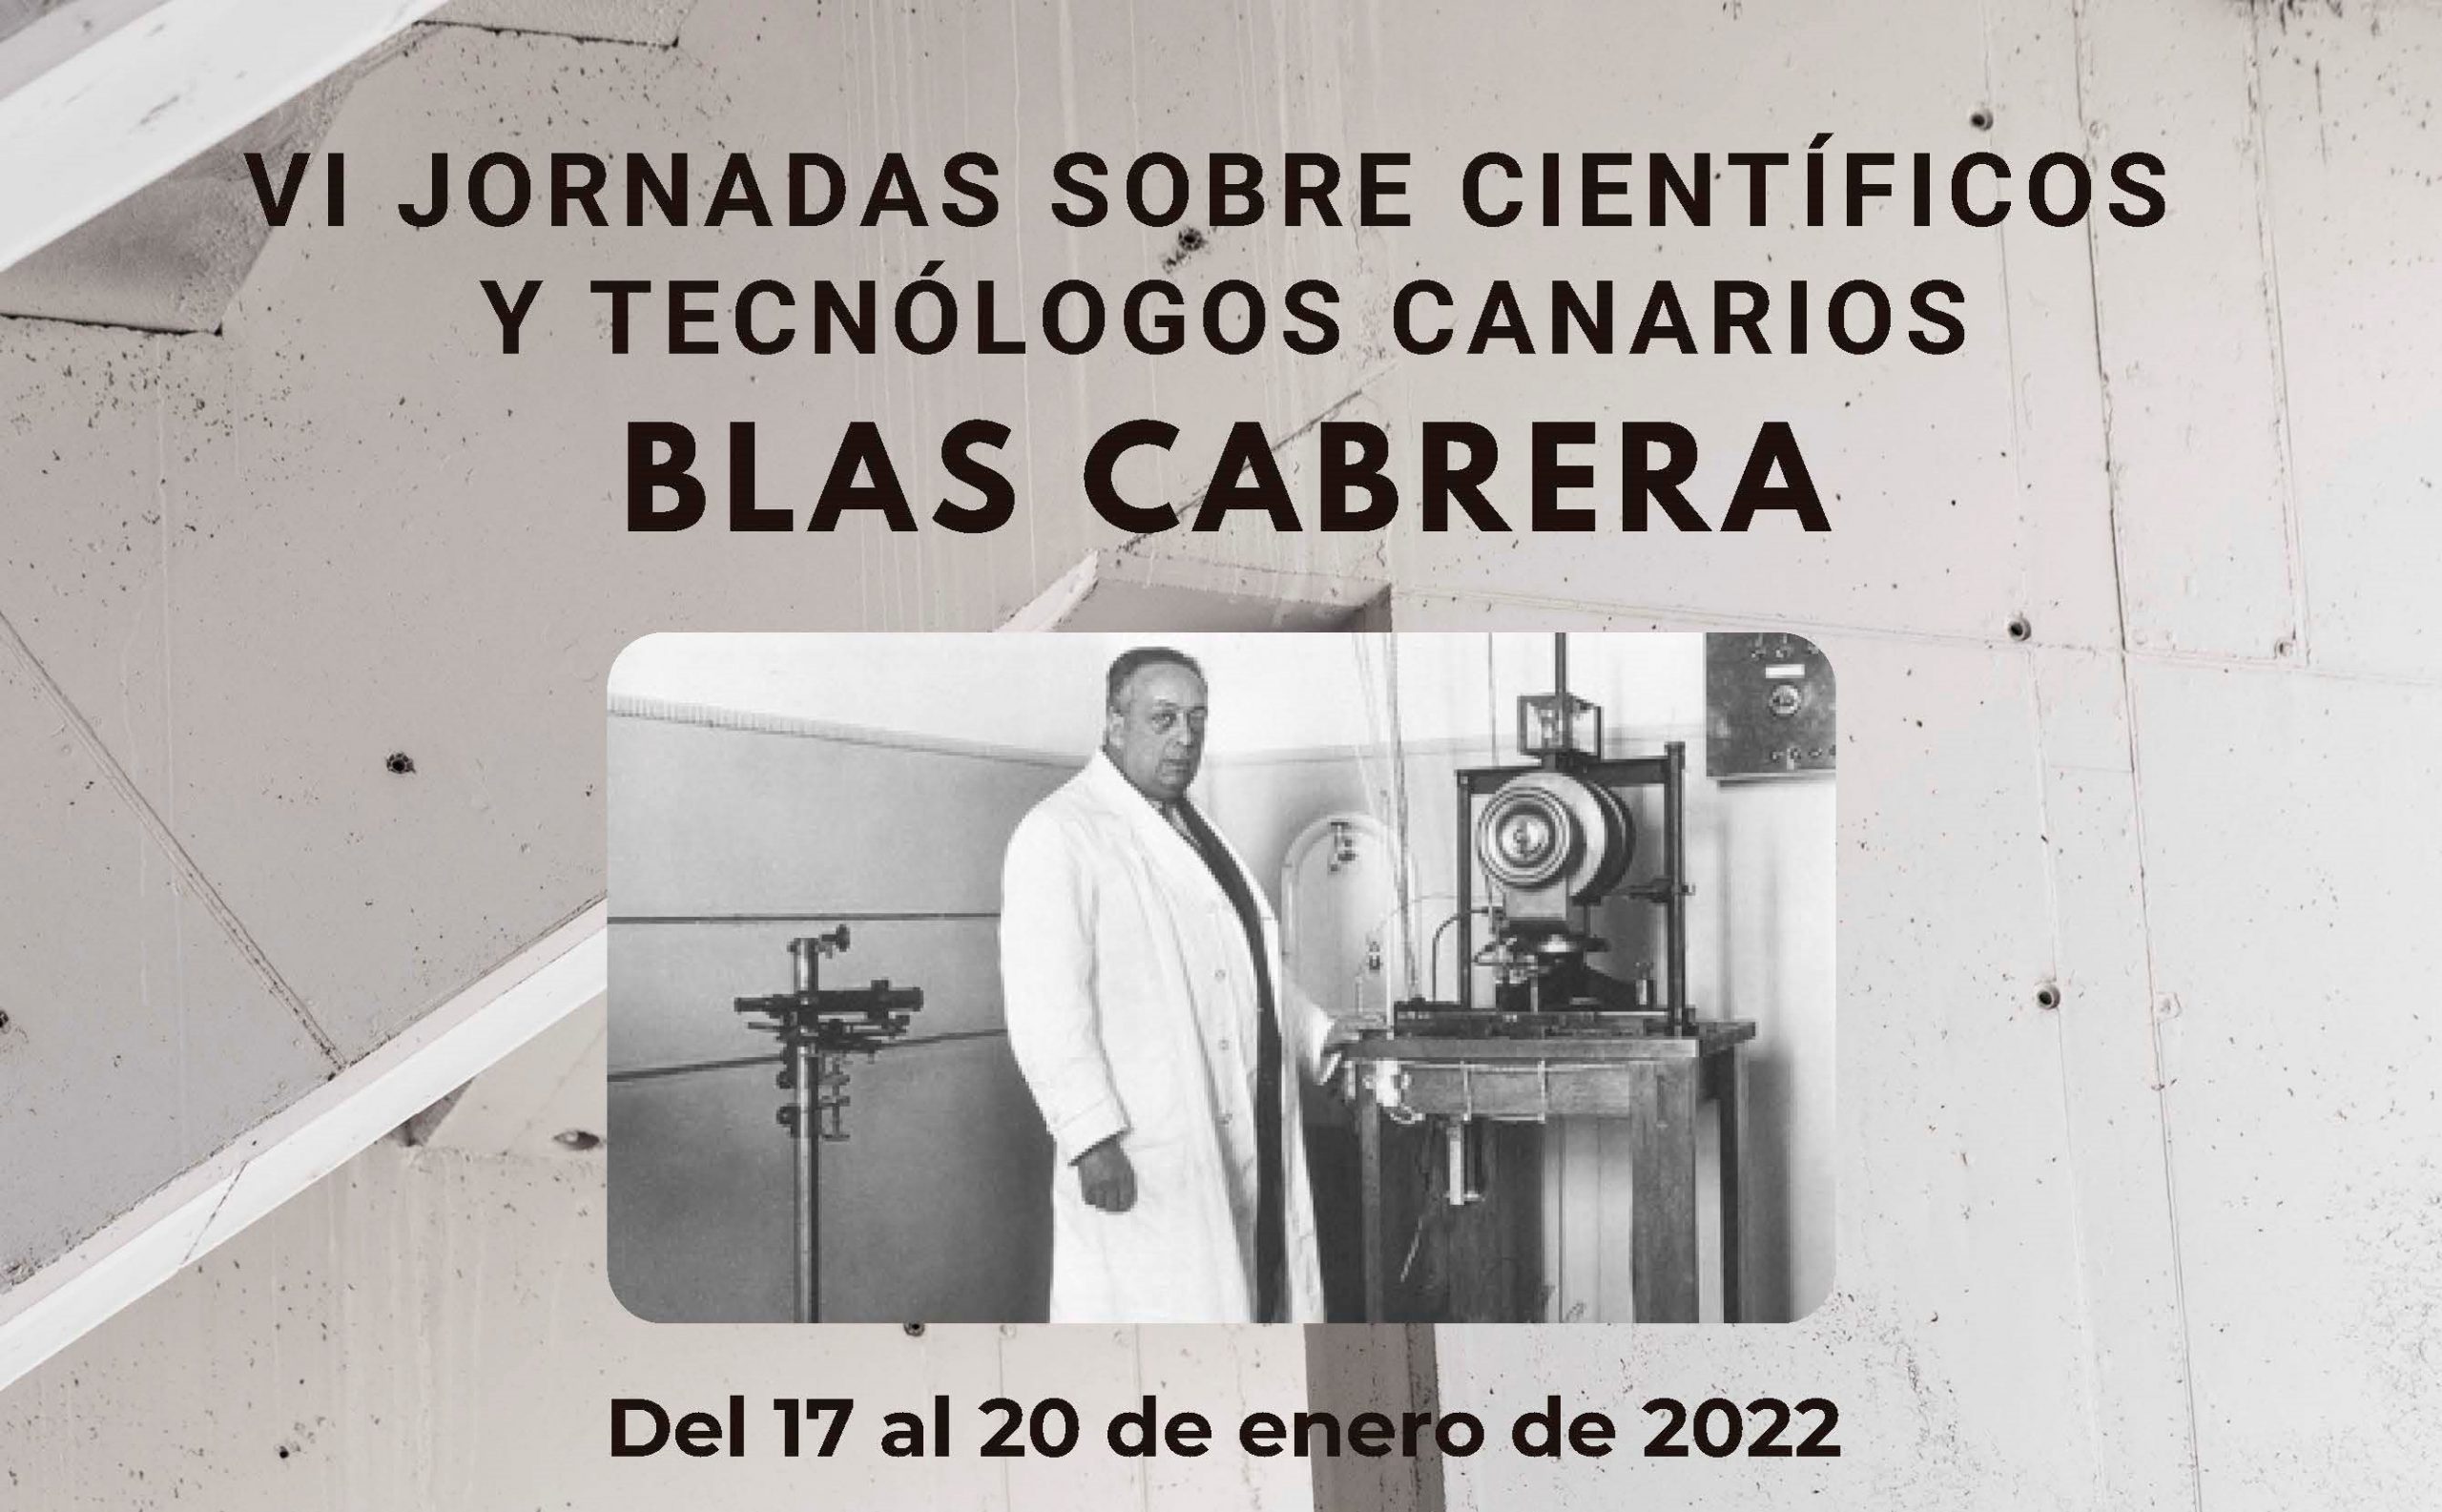 VI Jornadas sobre Científicos y Tecnólogos Canarios, dedicadas a Blas Cabrera